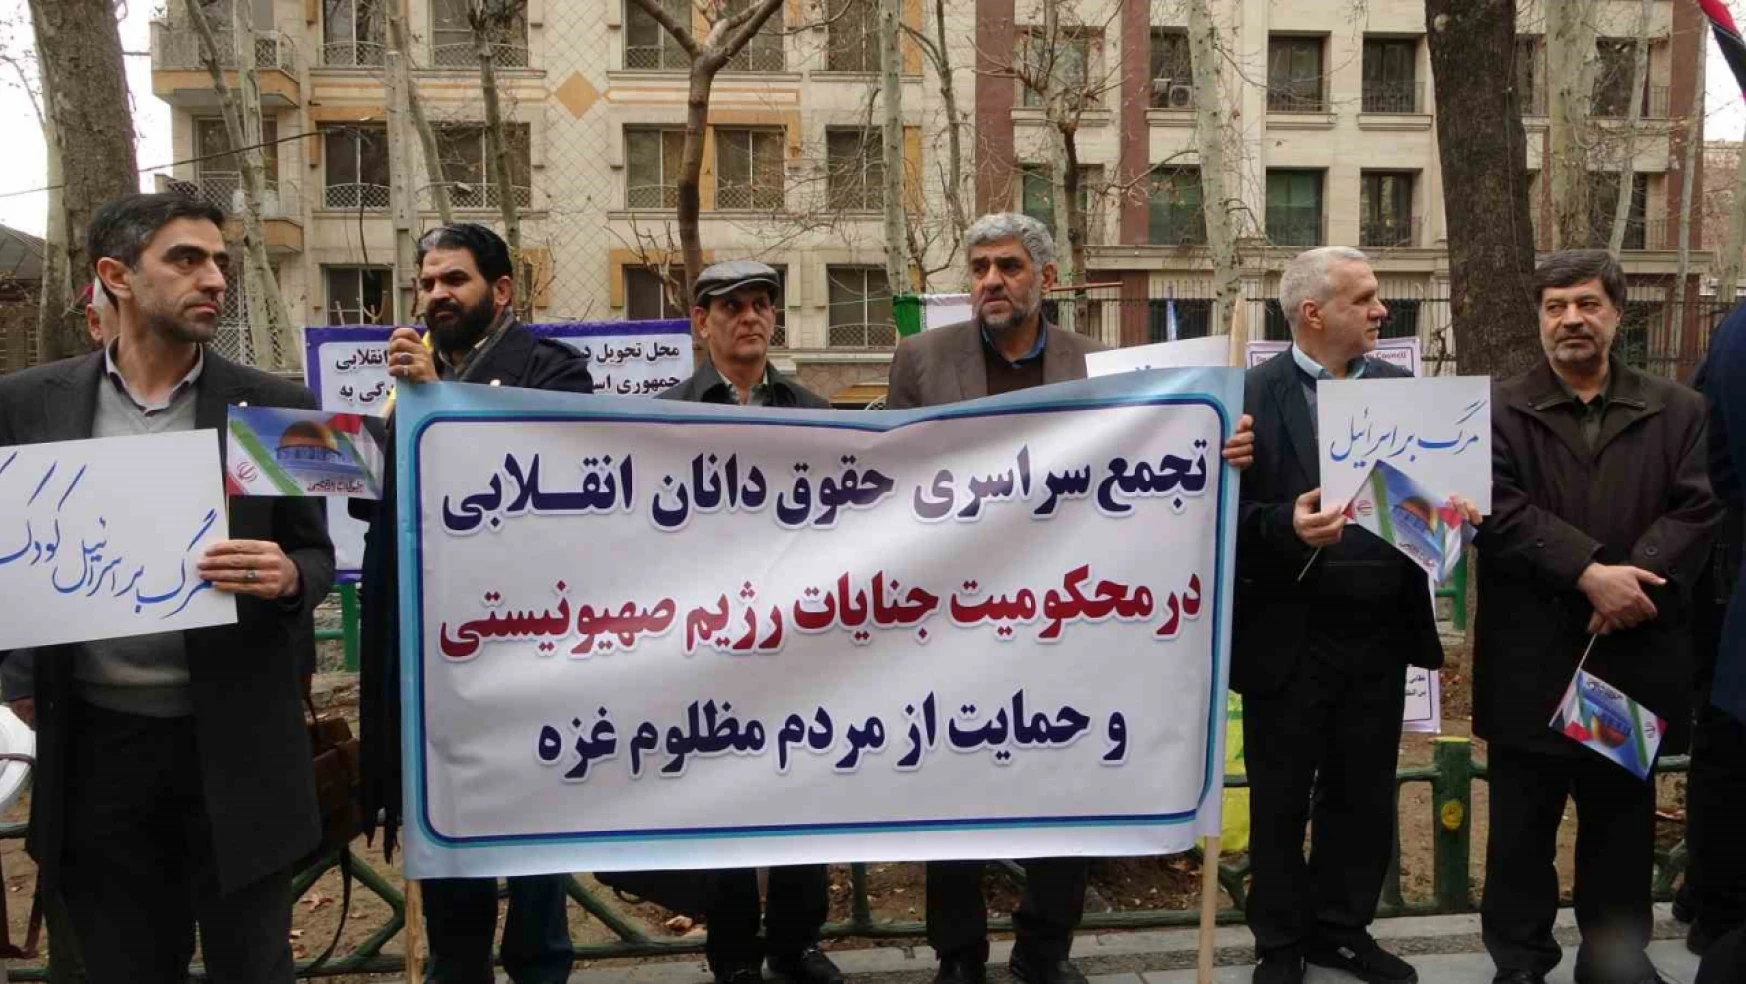 İranlı hukukçulardan Filistin'e destek gösterisi